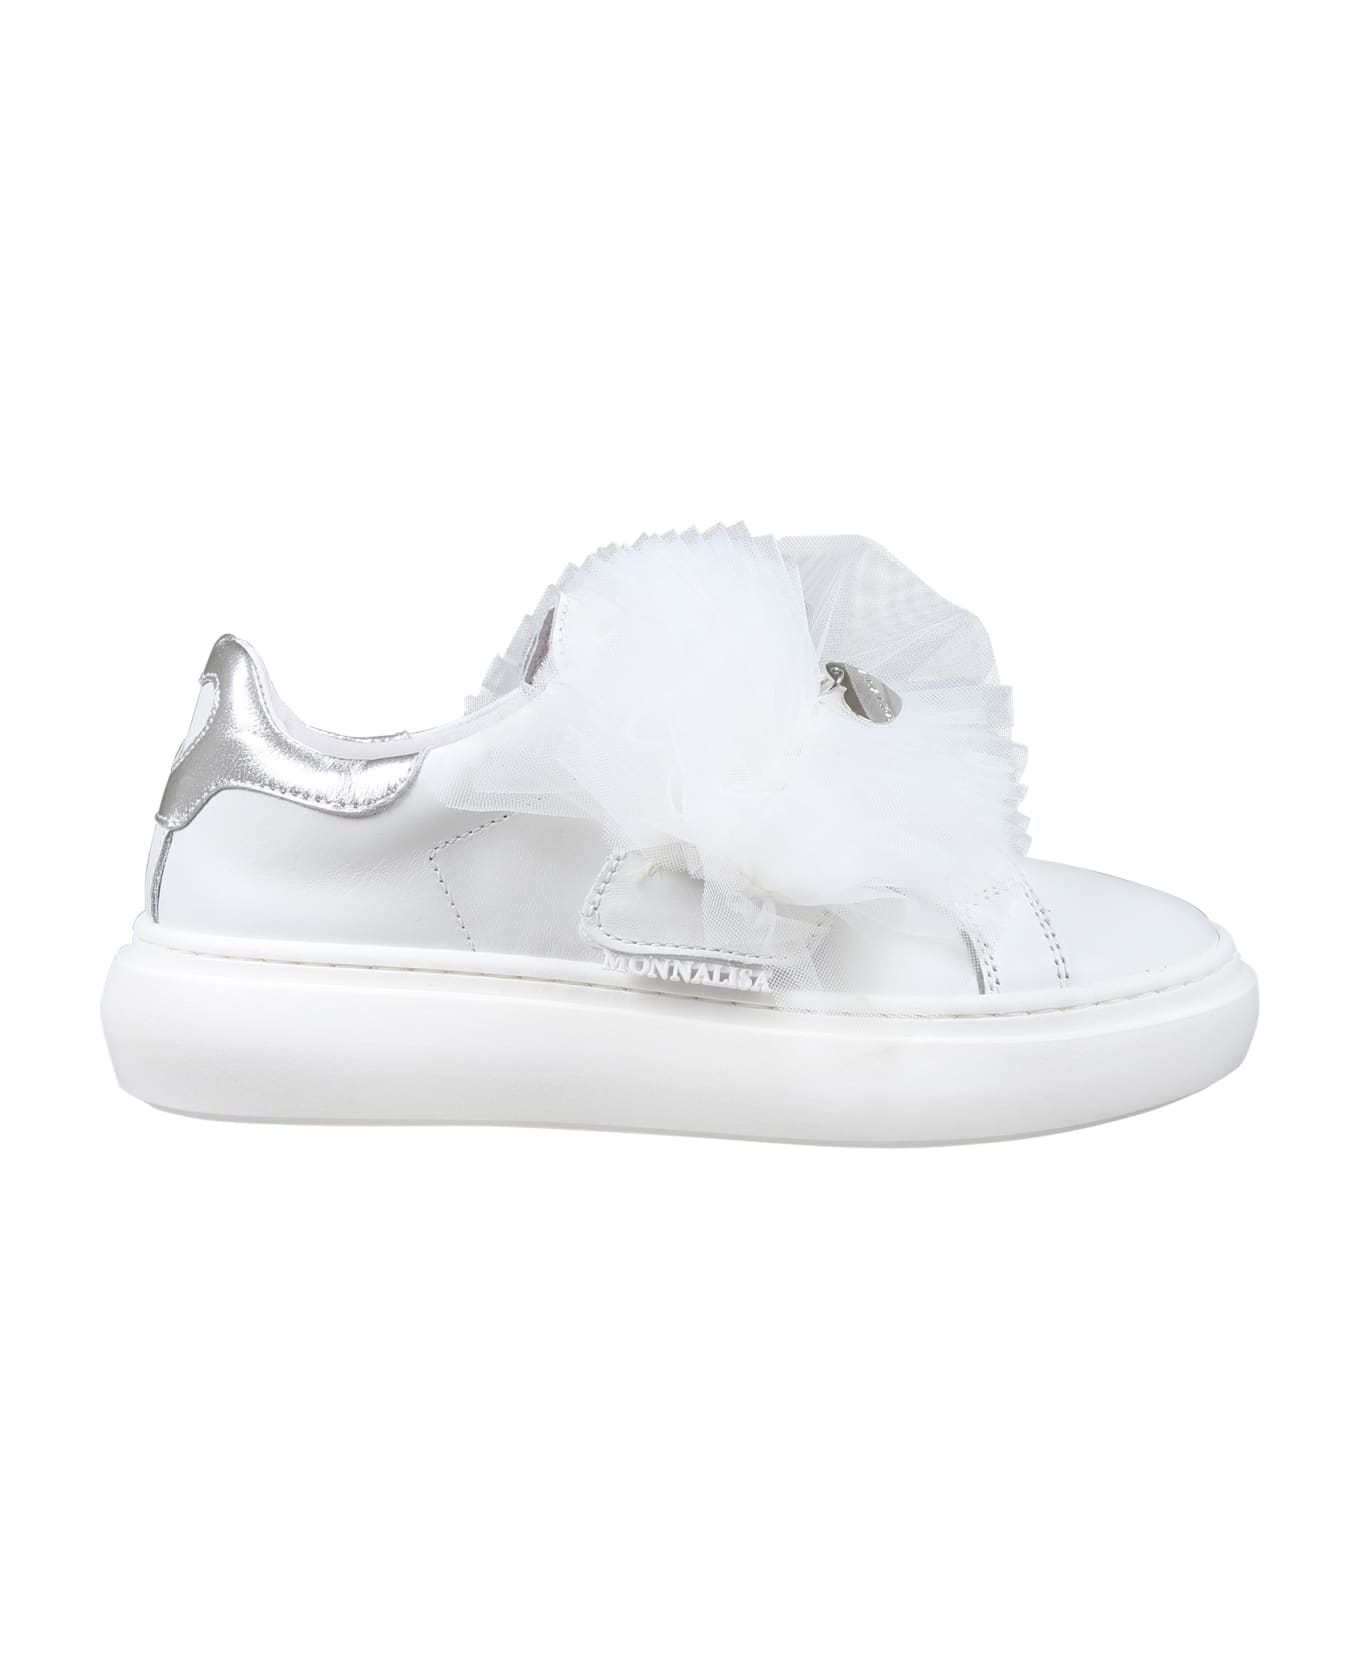 Monnalisa White Sneakers For Girl Avec Tulle Bow - White